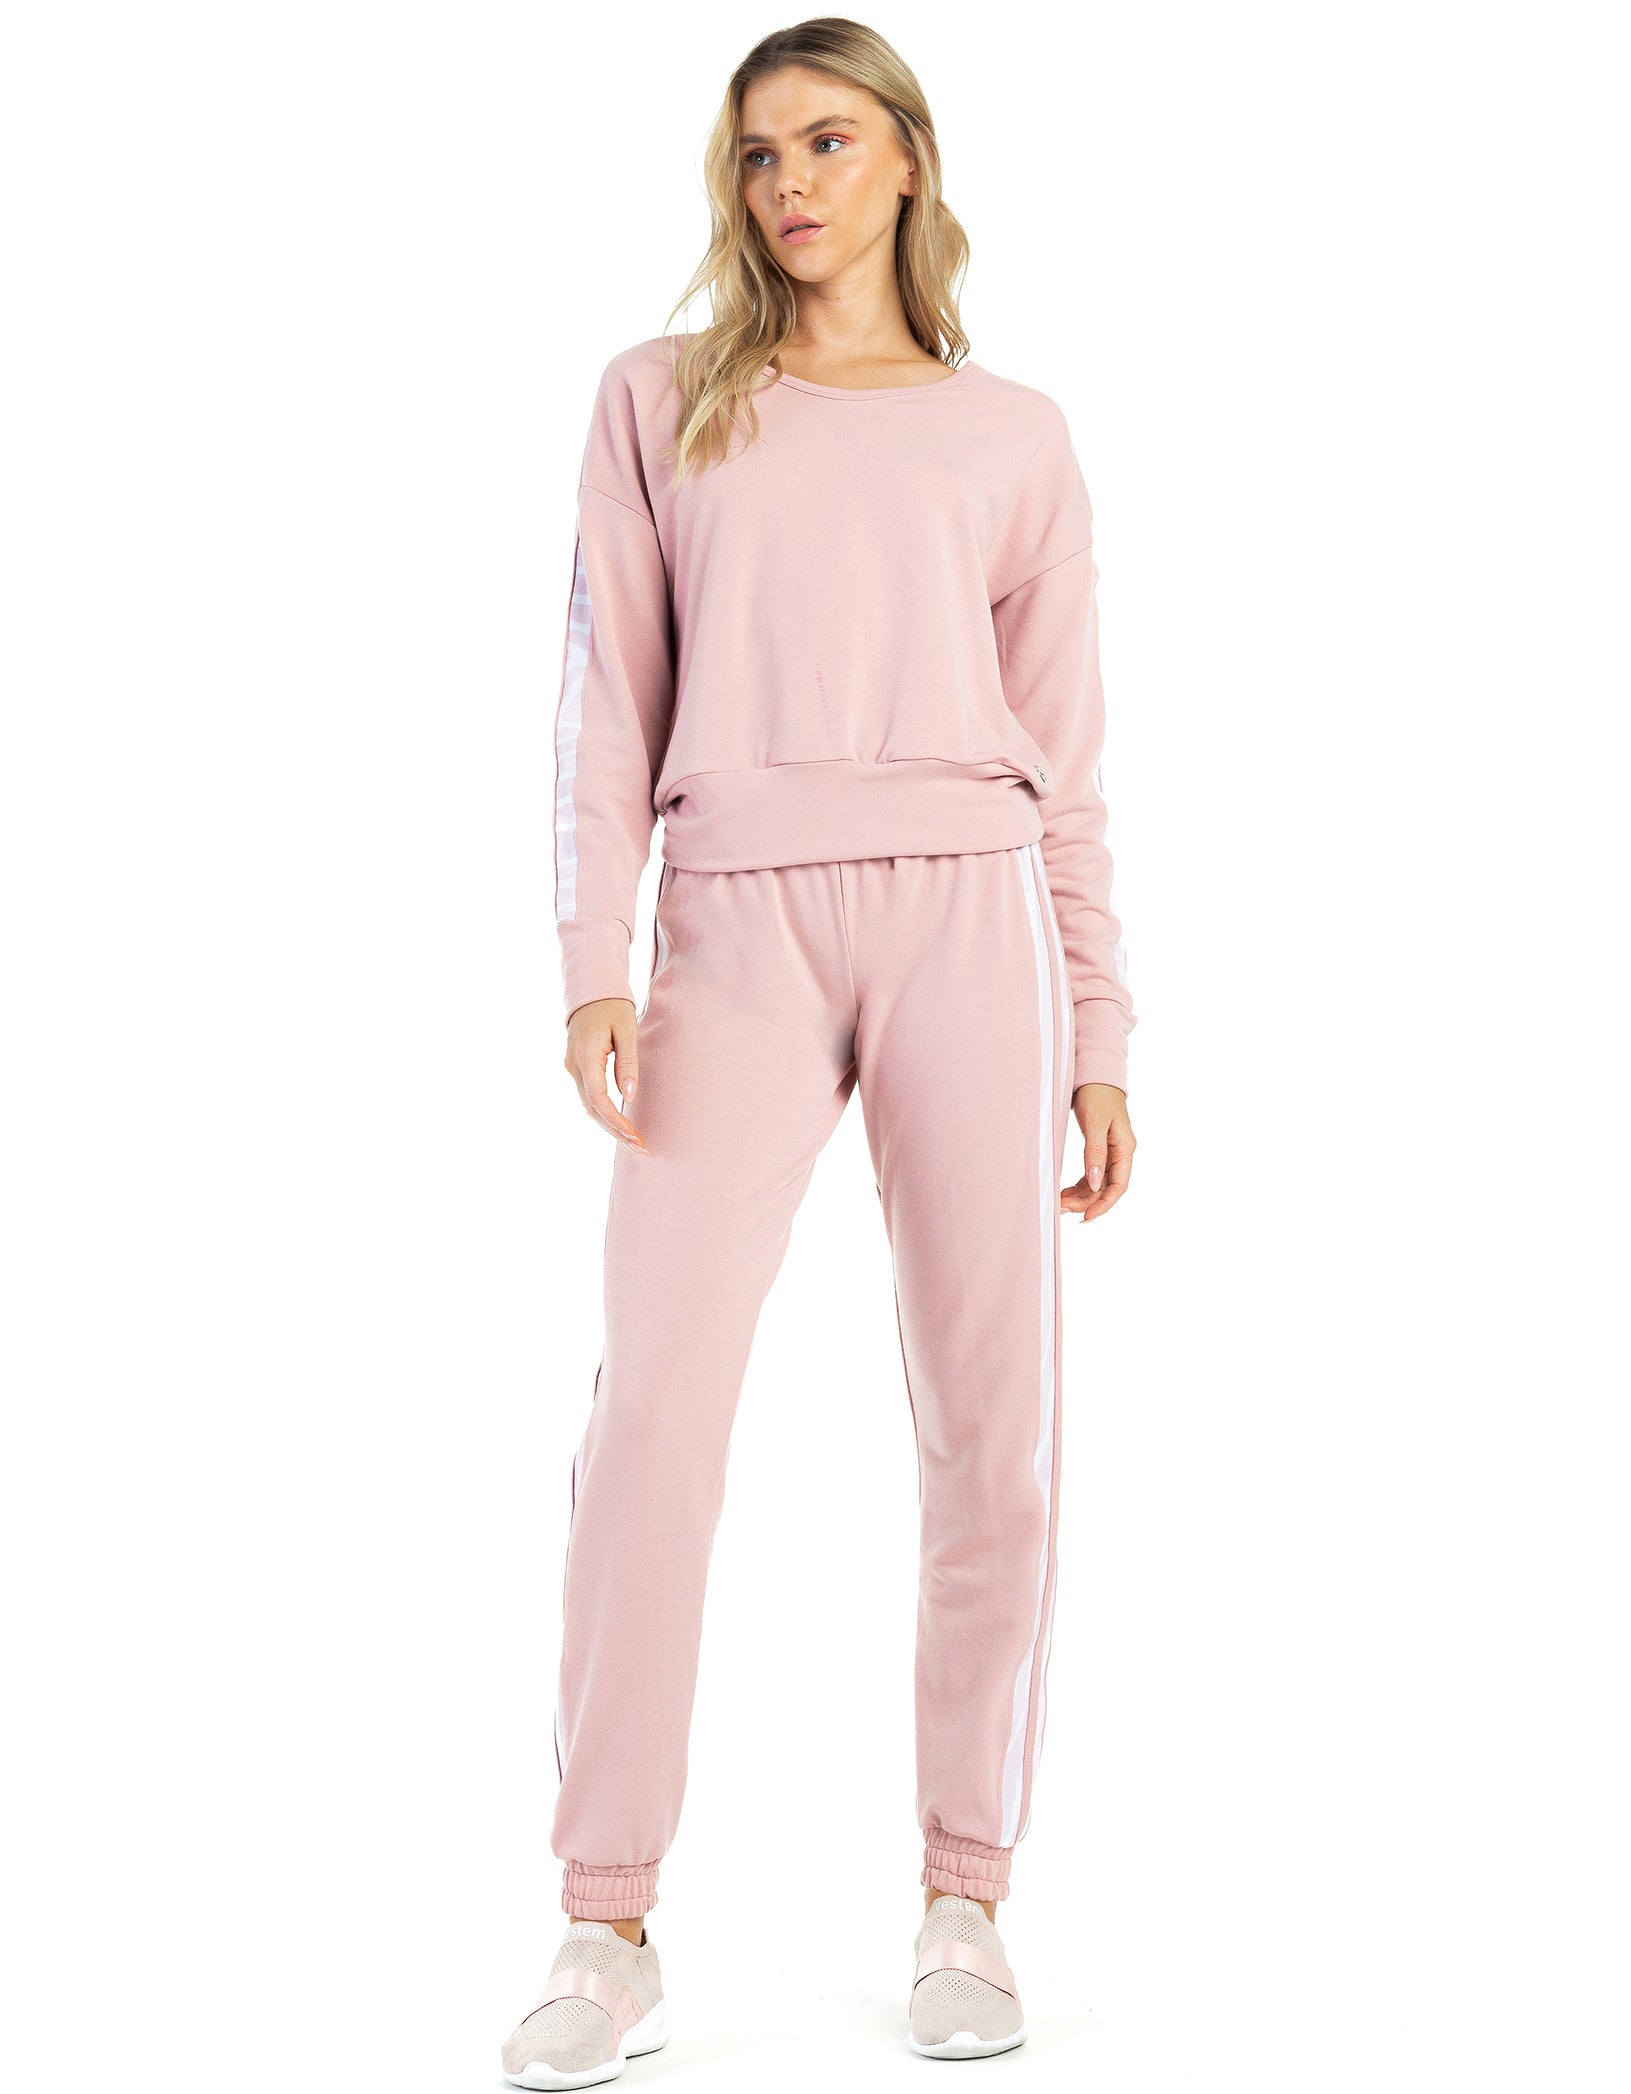 Vestem - Pants Dara pink Romance - CAL127.C0243